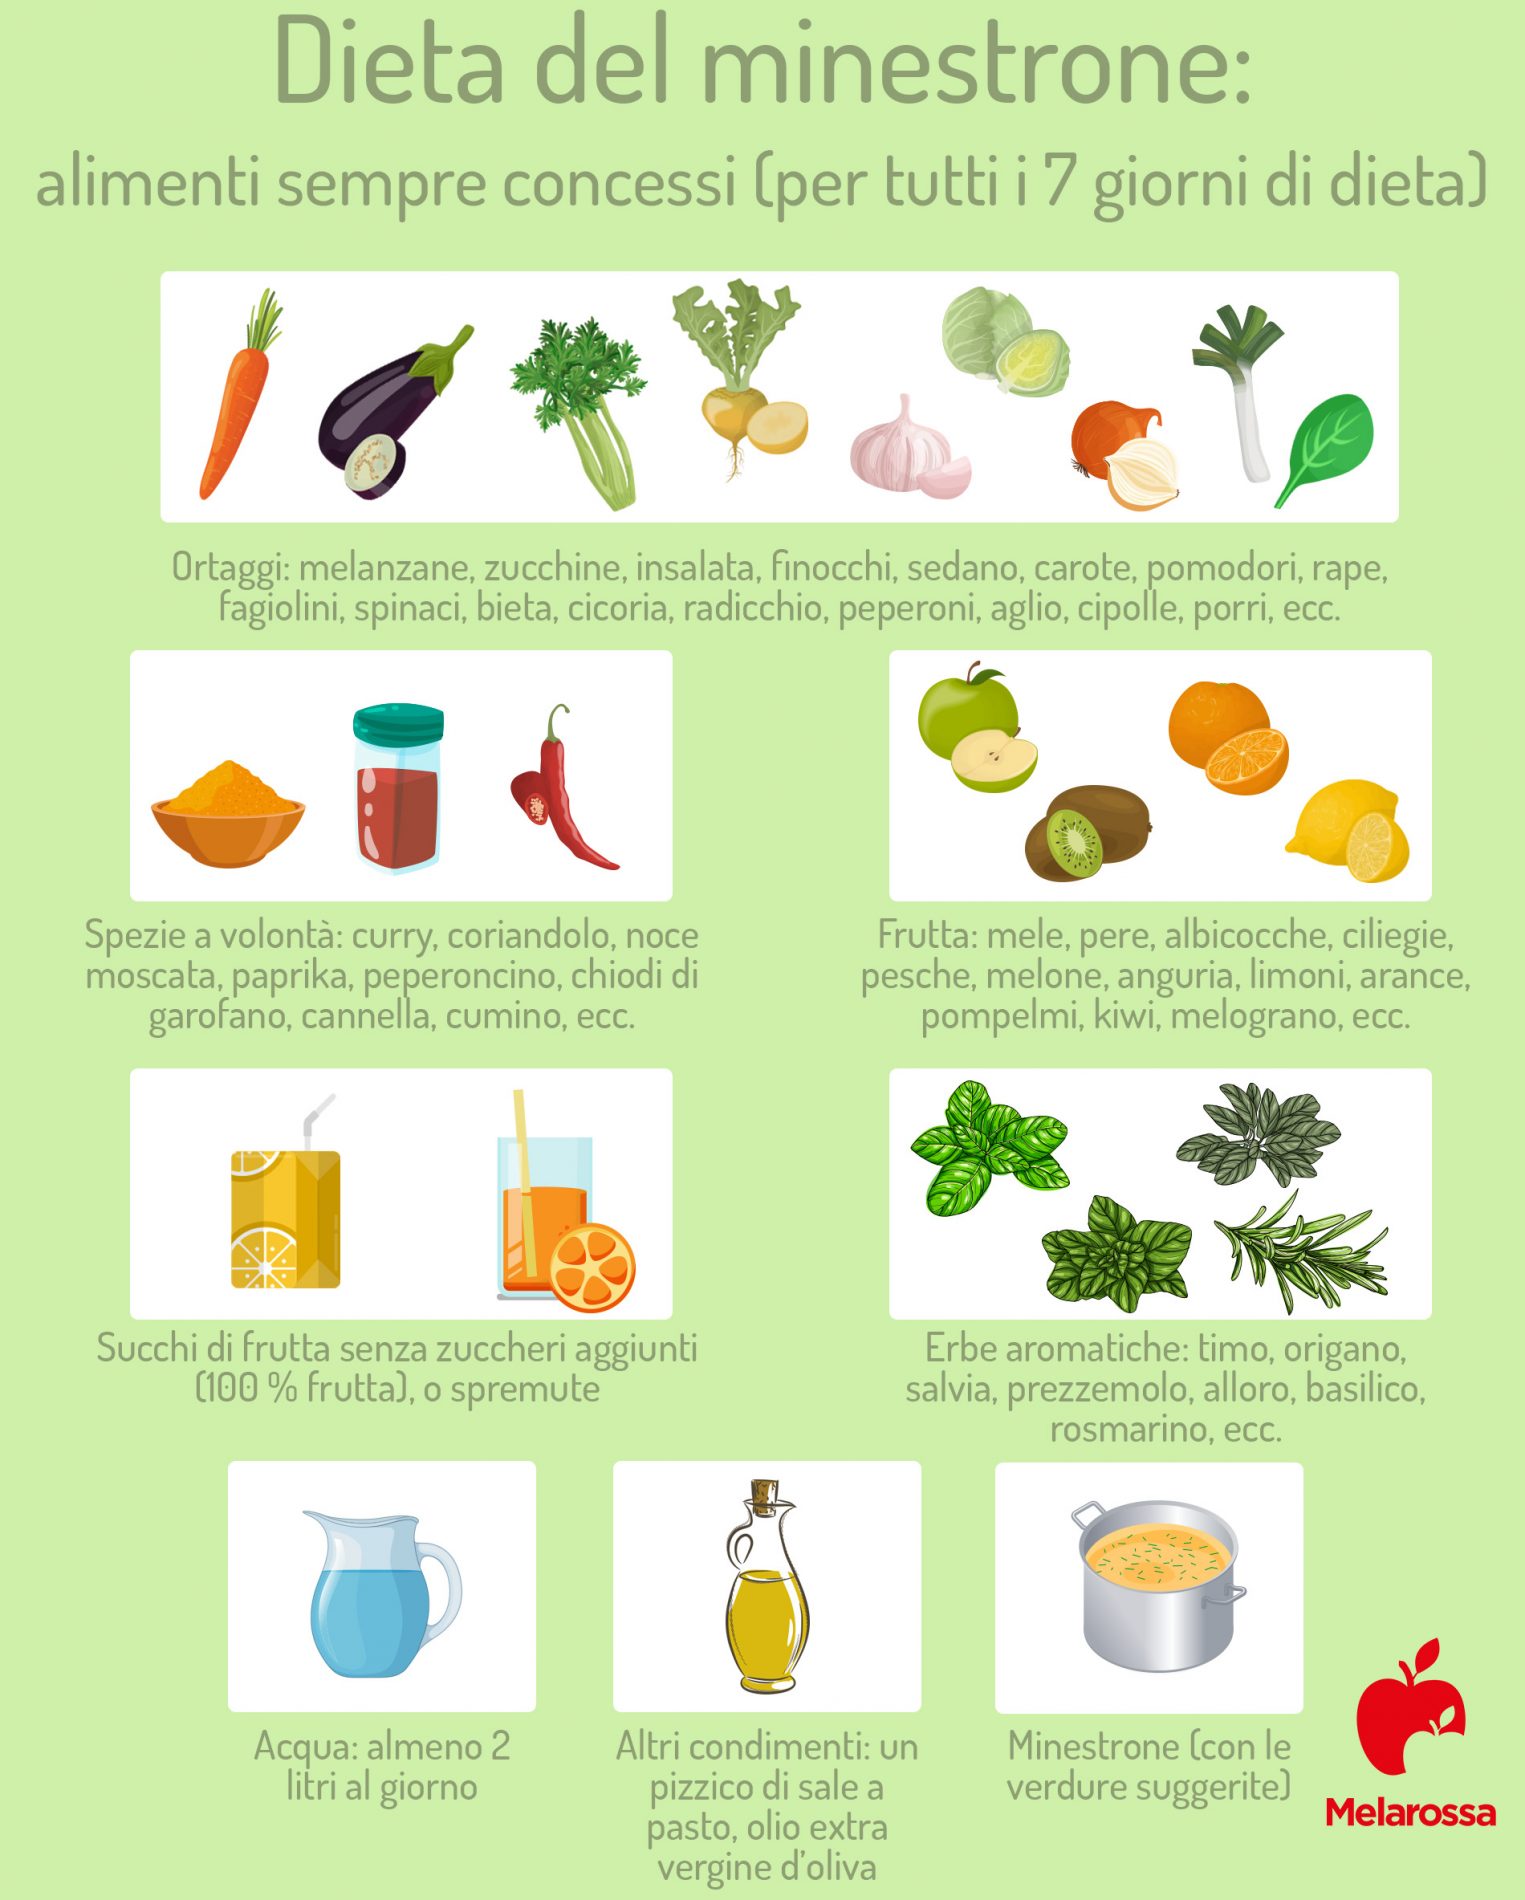 dieta del minestrone: alimenti concessi